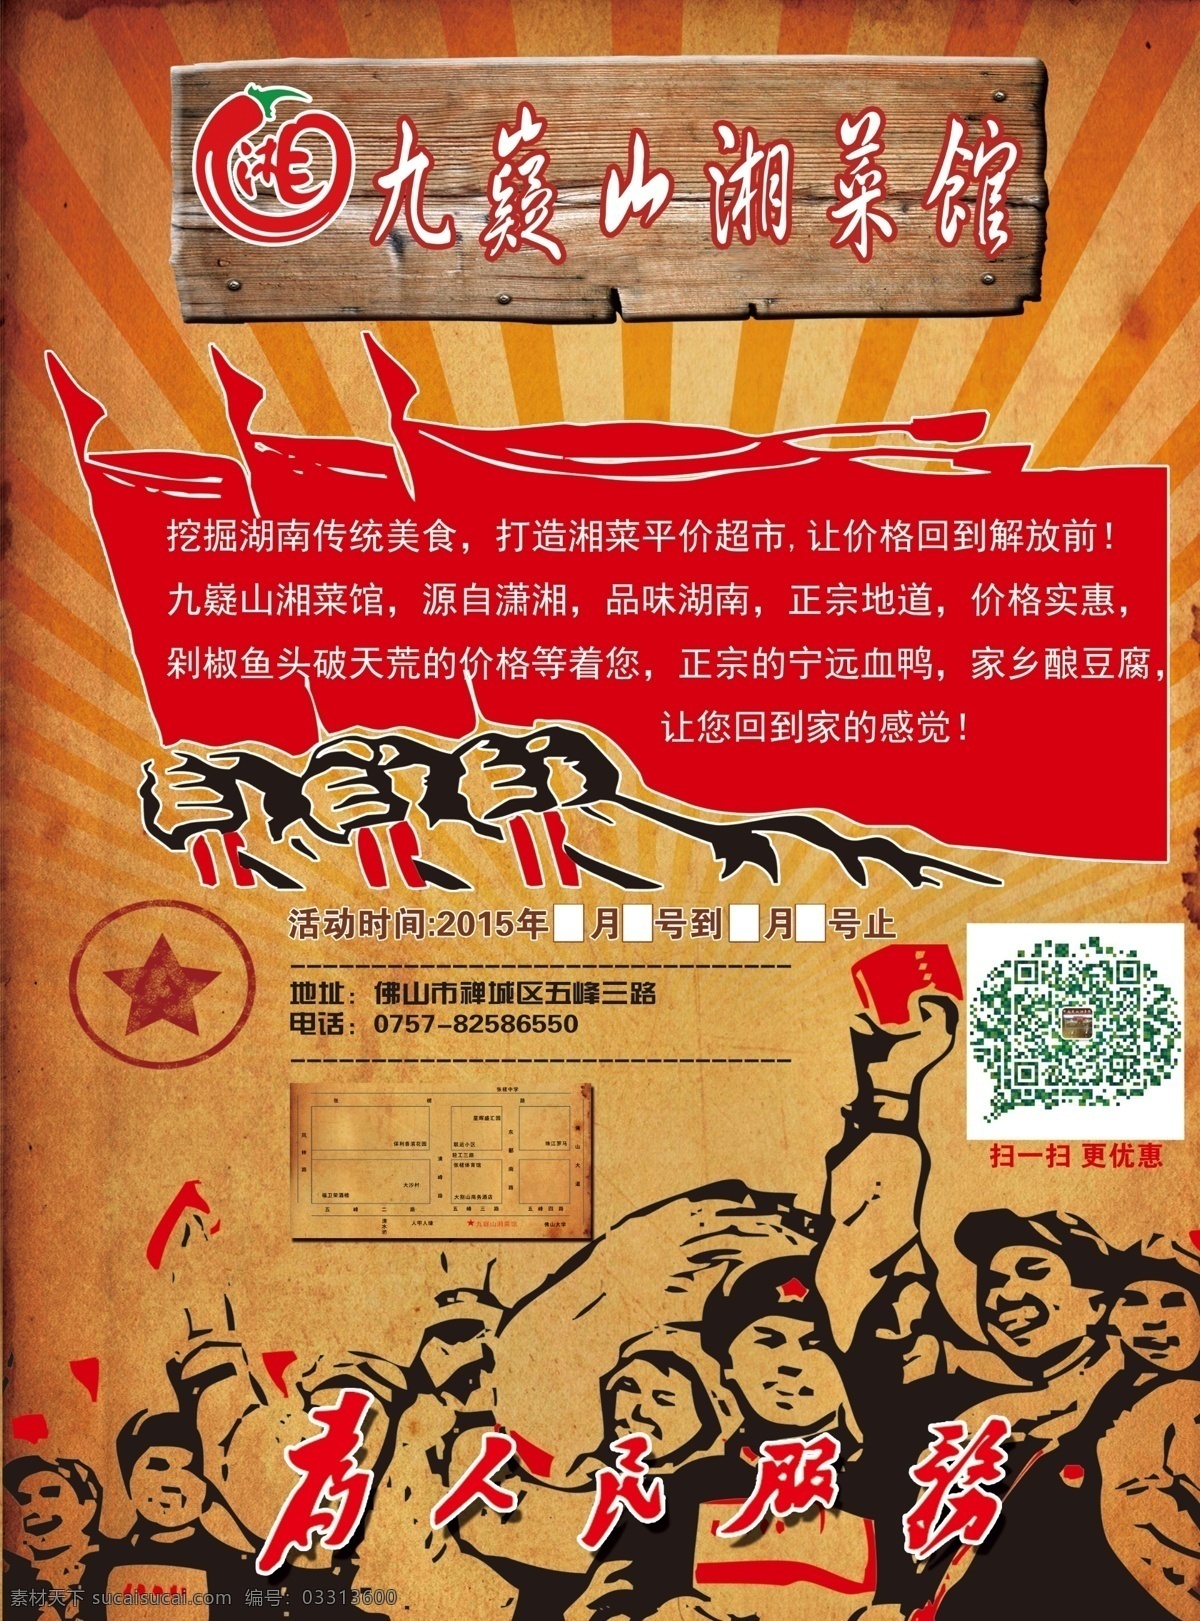 湘菜馆宣传单 年代 宣传单 革命宣传单 创意宣传单 九嶷山 dm宣传单